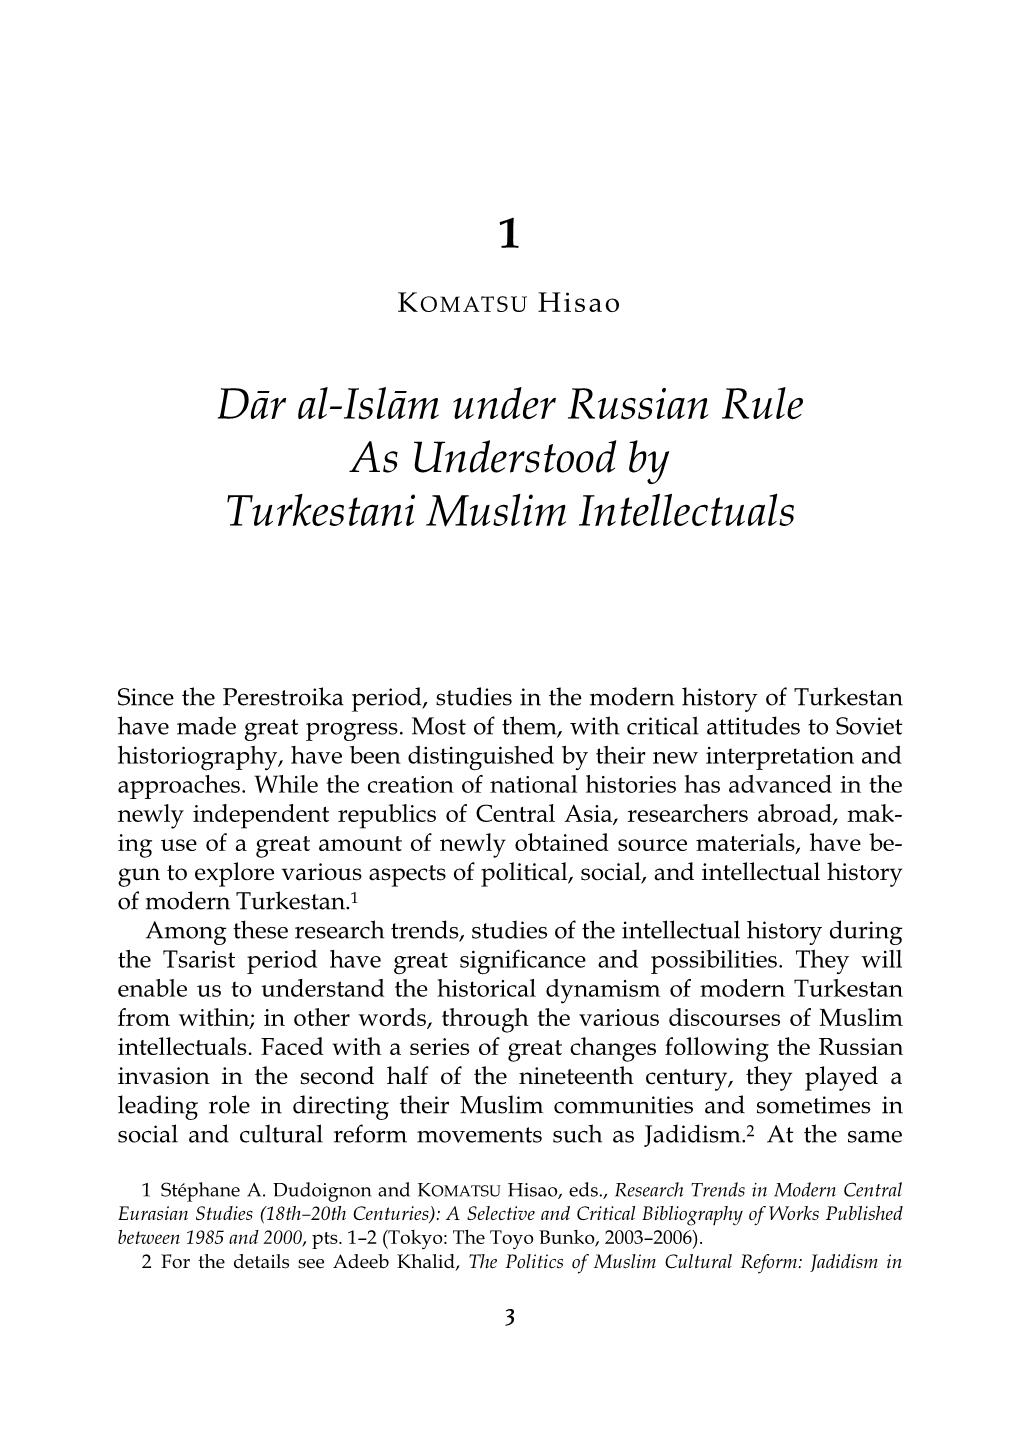 1 Dār Al-Islām Under Russian Rule As Understood by Turkestani Muslim